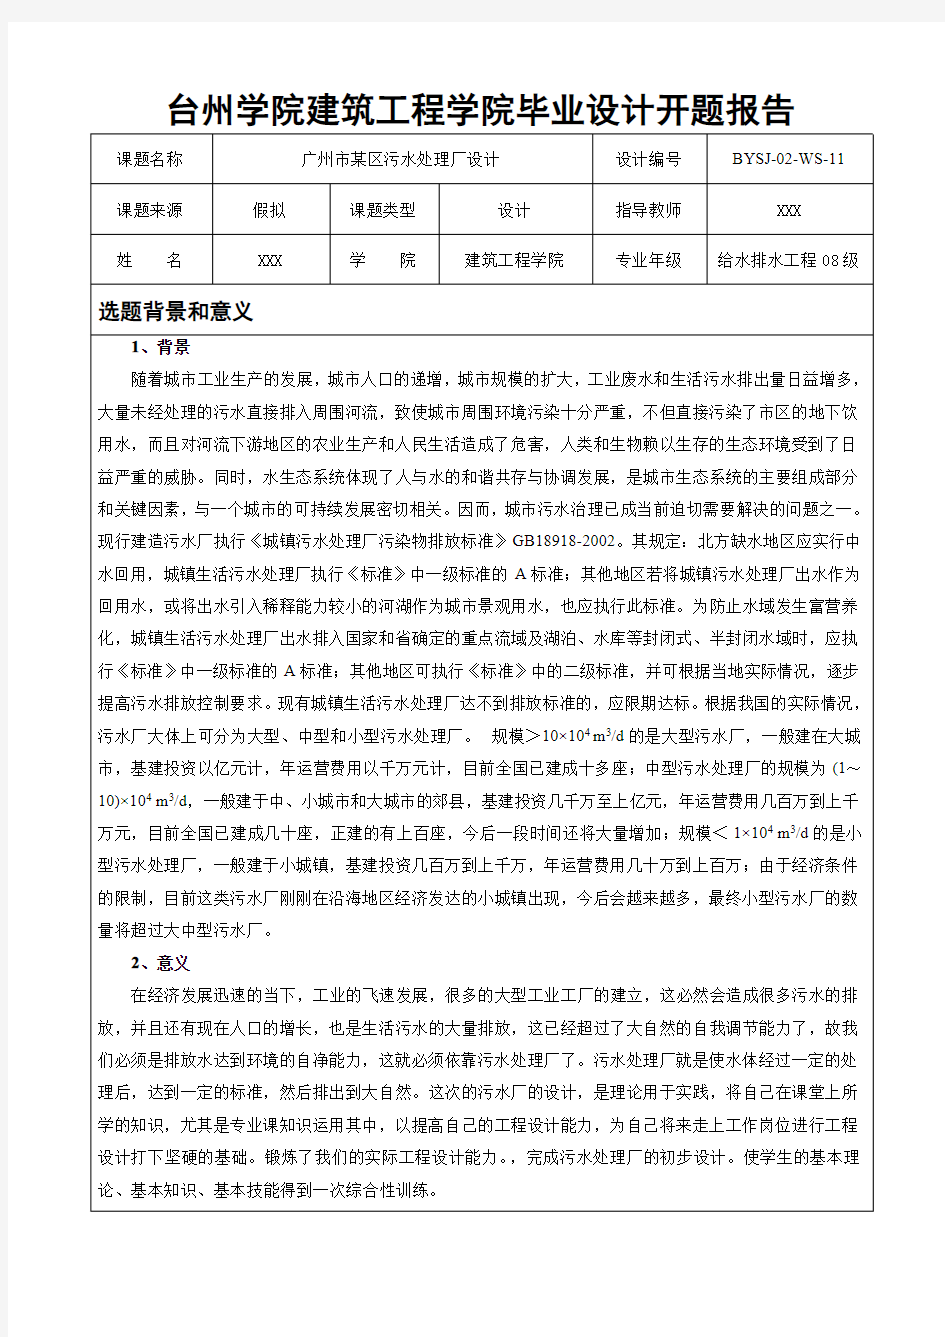 台州学院建筑工程学院毕业设计开题报告